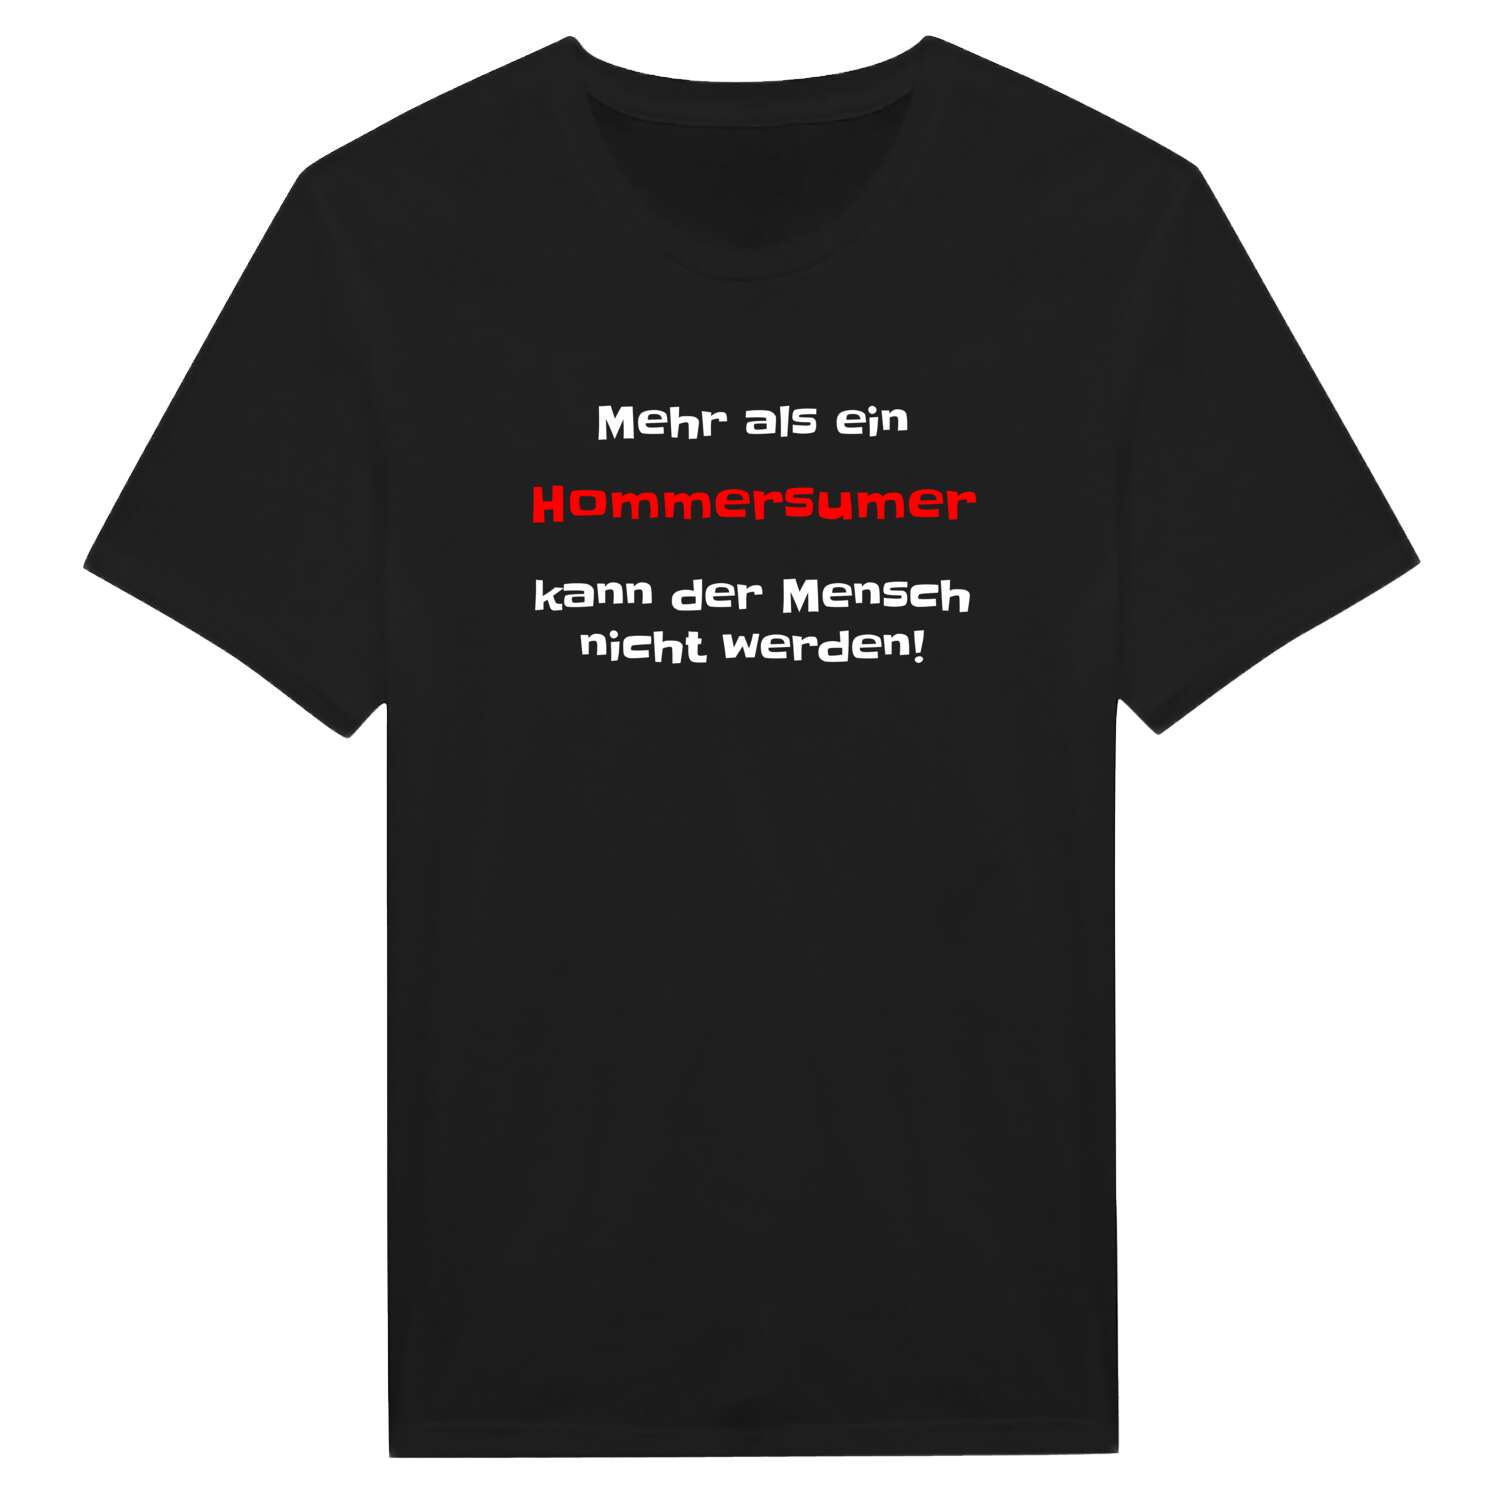 Hommersum T-Shirt »Mehr als ein«